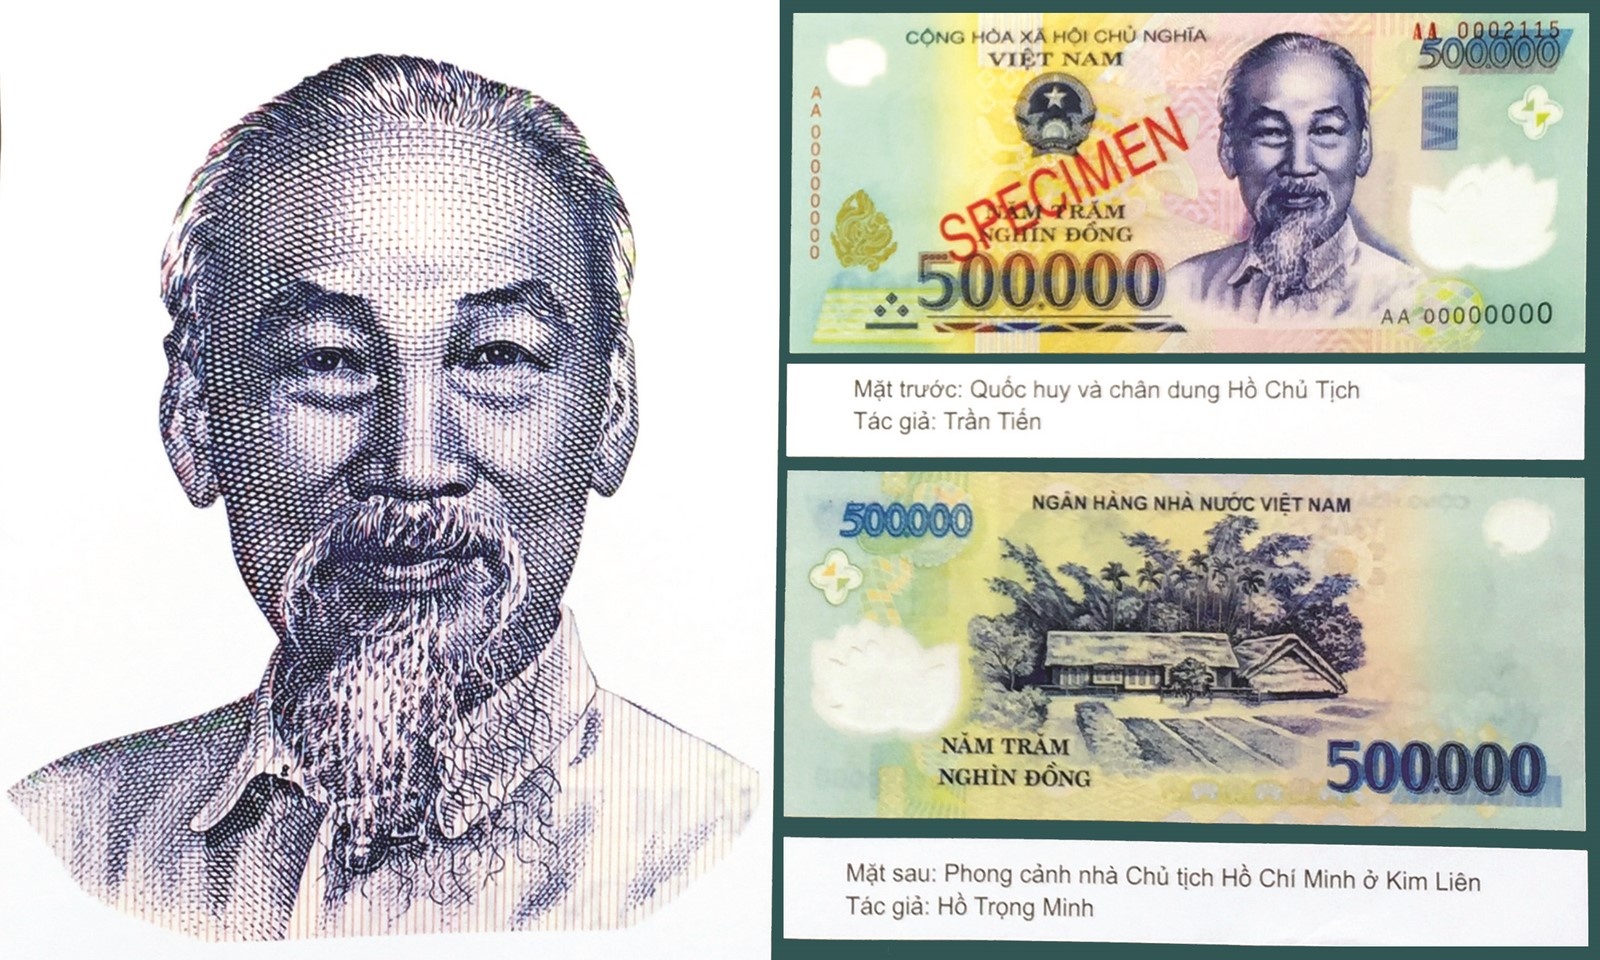 Chủ tịch Hồ Chí Minh trên tiền Việt Nam: Tờ tiền mang hình ảnh của Chủ tịch Hồ Chí Minh không chỉ là niềm tự hào của người Việt, mà còn được người nước ngoài quan tâm và yêu thích. Hãy cùng chiêm ngưỡng vẻ đẹp và ý nghĩa của tờ tiền này thông qua những hình ảnh tuyệt đẹp.